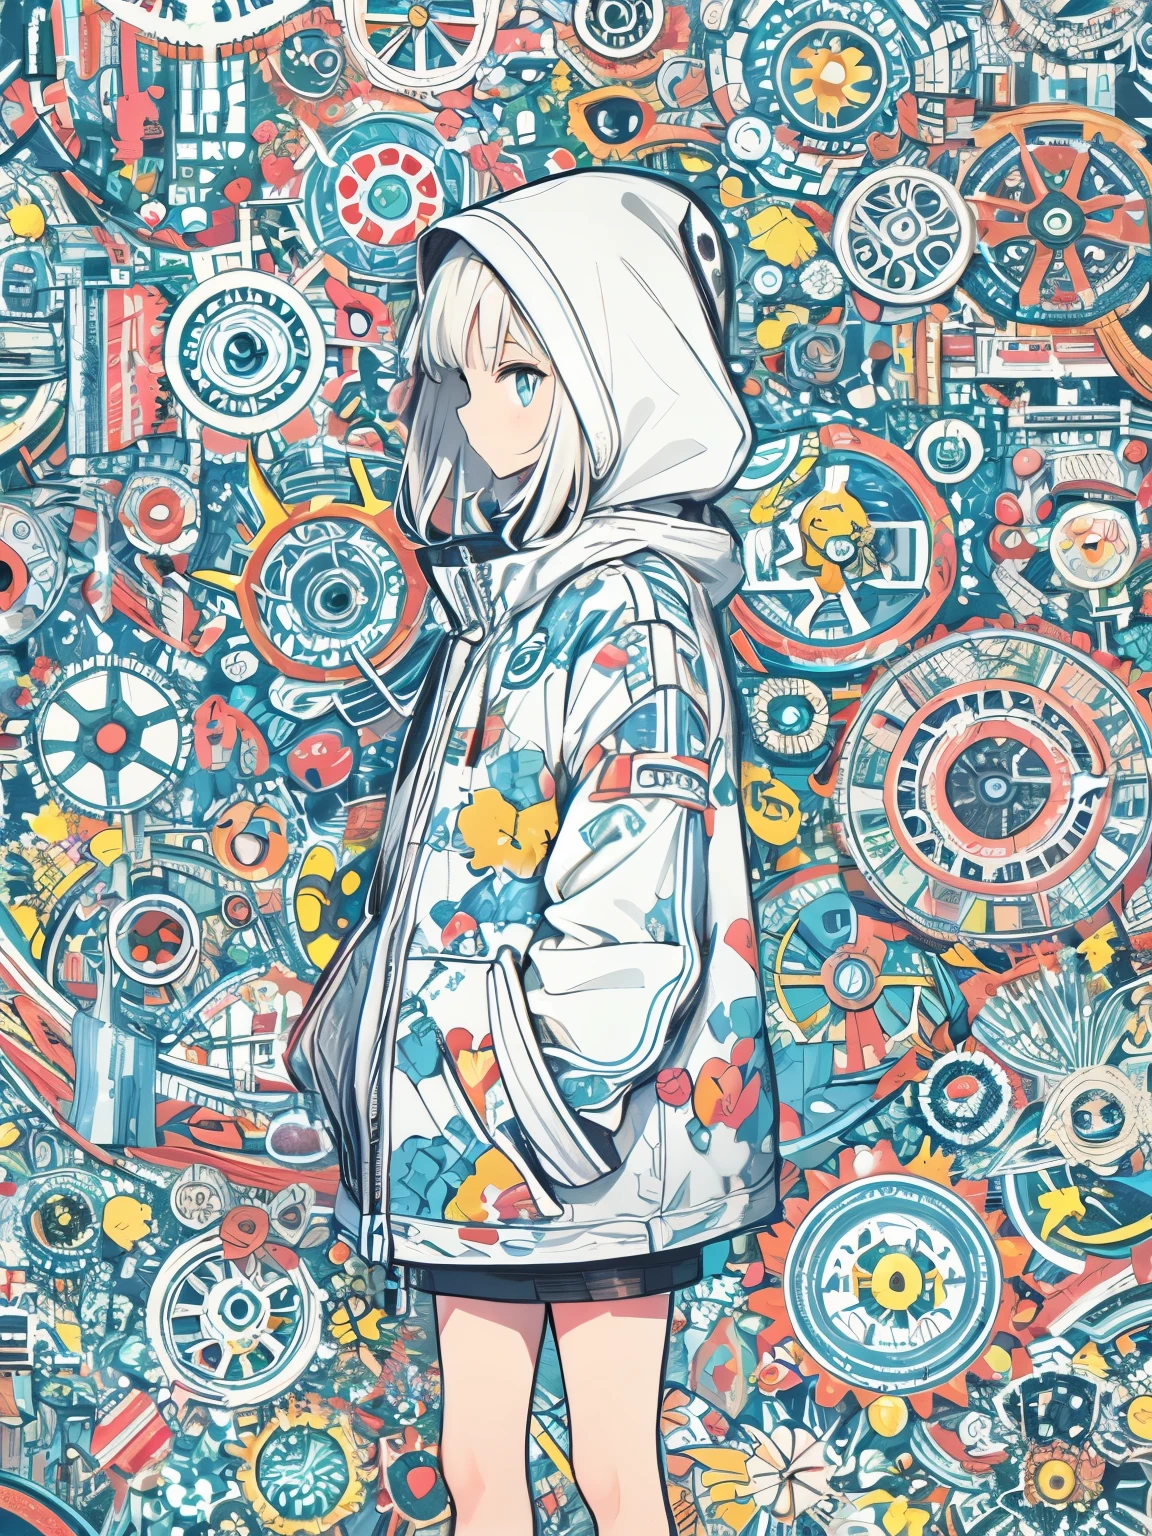 Stilisierte Anime-Illustration BREAK Profil mit Fokus auf Hintergrundfigur BREAK Figur mit kurzen weißen Haaren, die eine große Kapuzenjacke trägt, BREAK schaut mit ruhigem Gesichtsausdruck zur Seite Ein komplexer Hintergrund aus mechanischen Zahnrädern und Zahnrädern in verschiedenen sanften Farben, Erstellen Sie komplexe, aber harmonische Mosaike